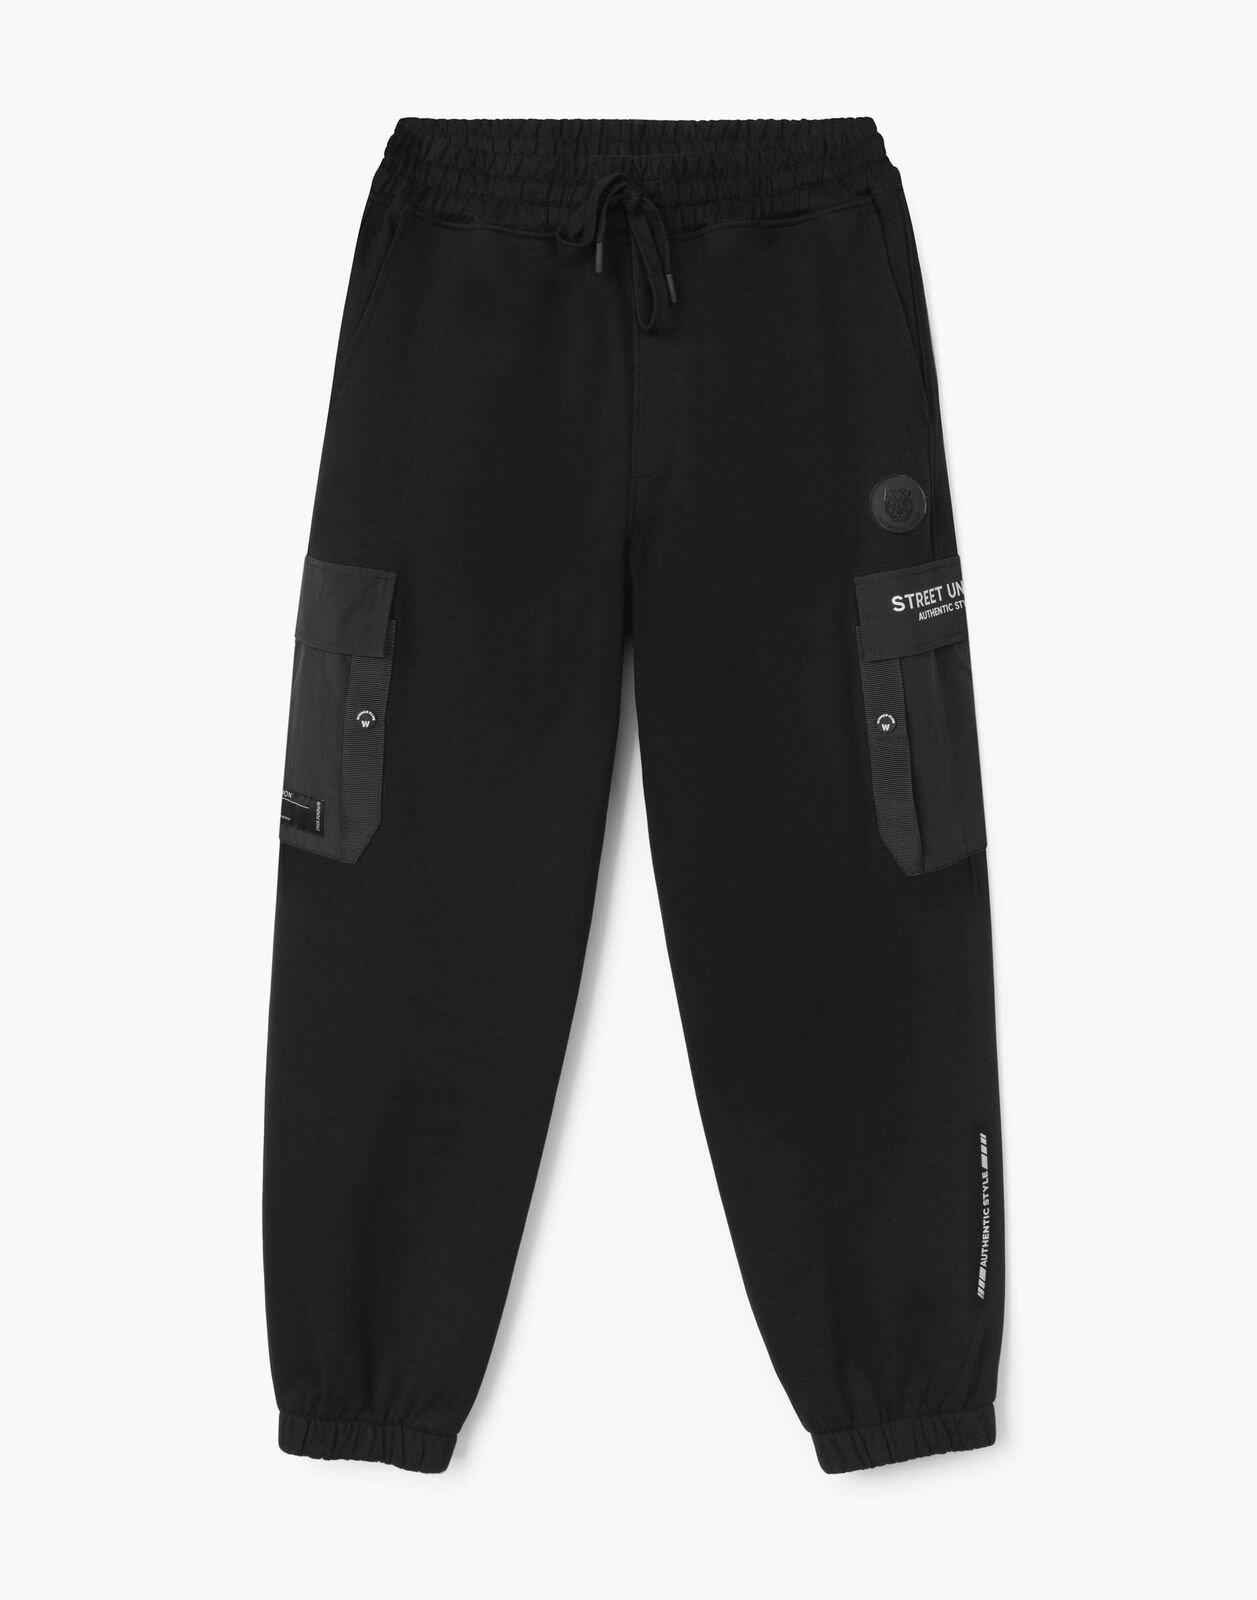 Спортивные брюки Gloria Jeans BAC012293 темно-серый меланж мужской XXL/182 (56)